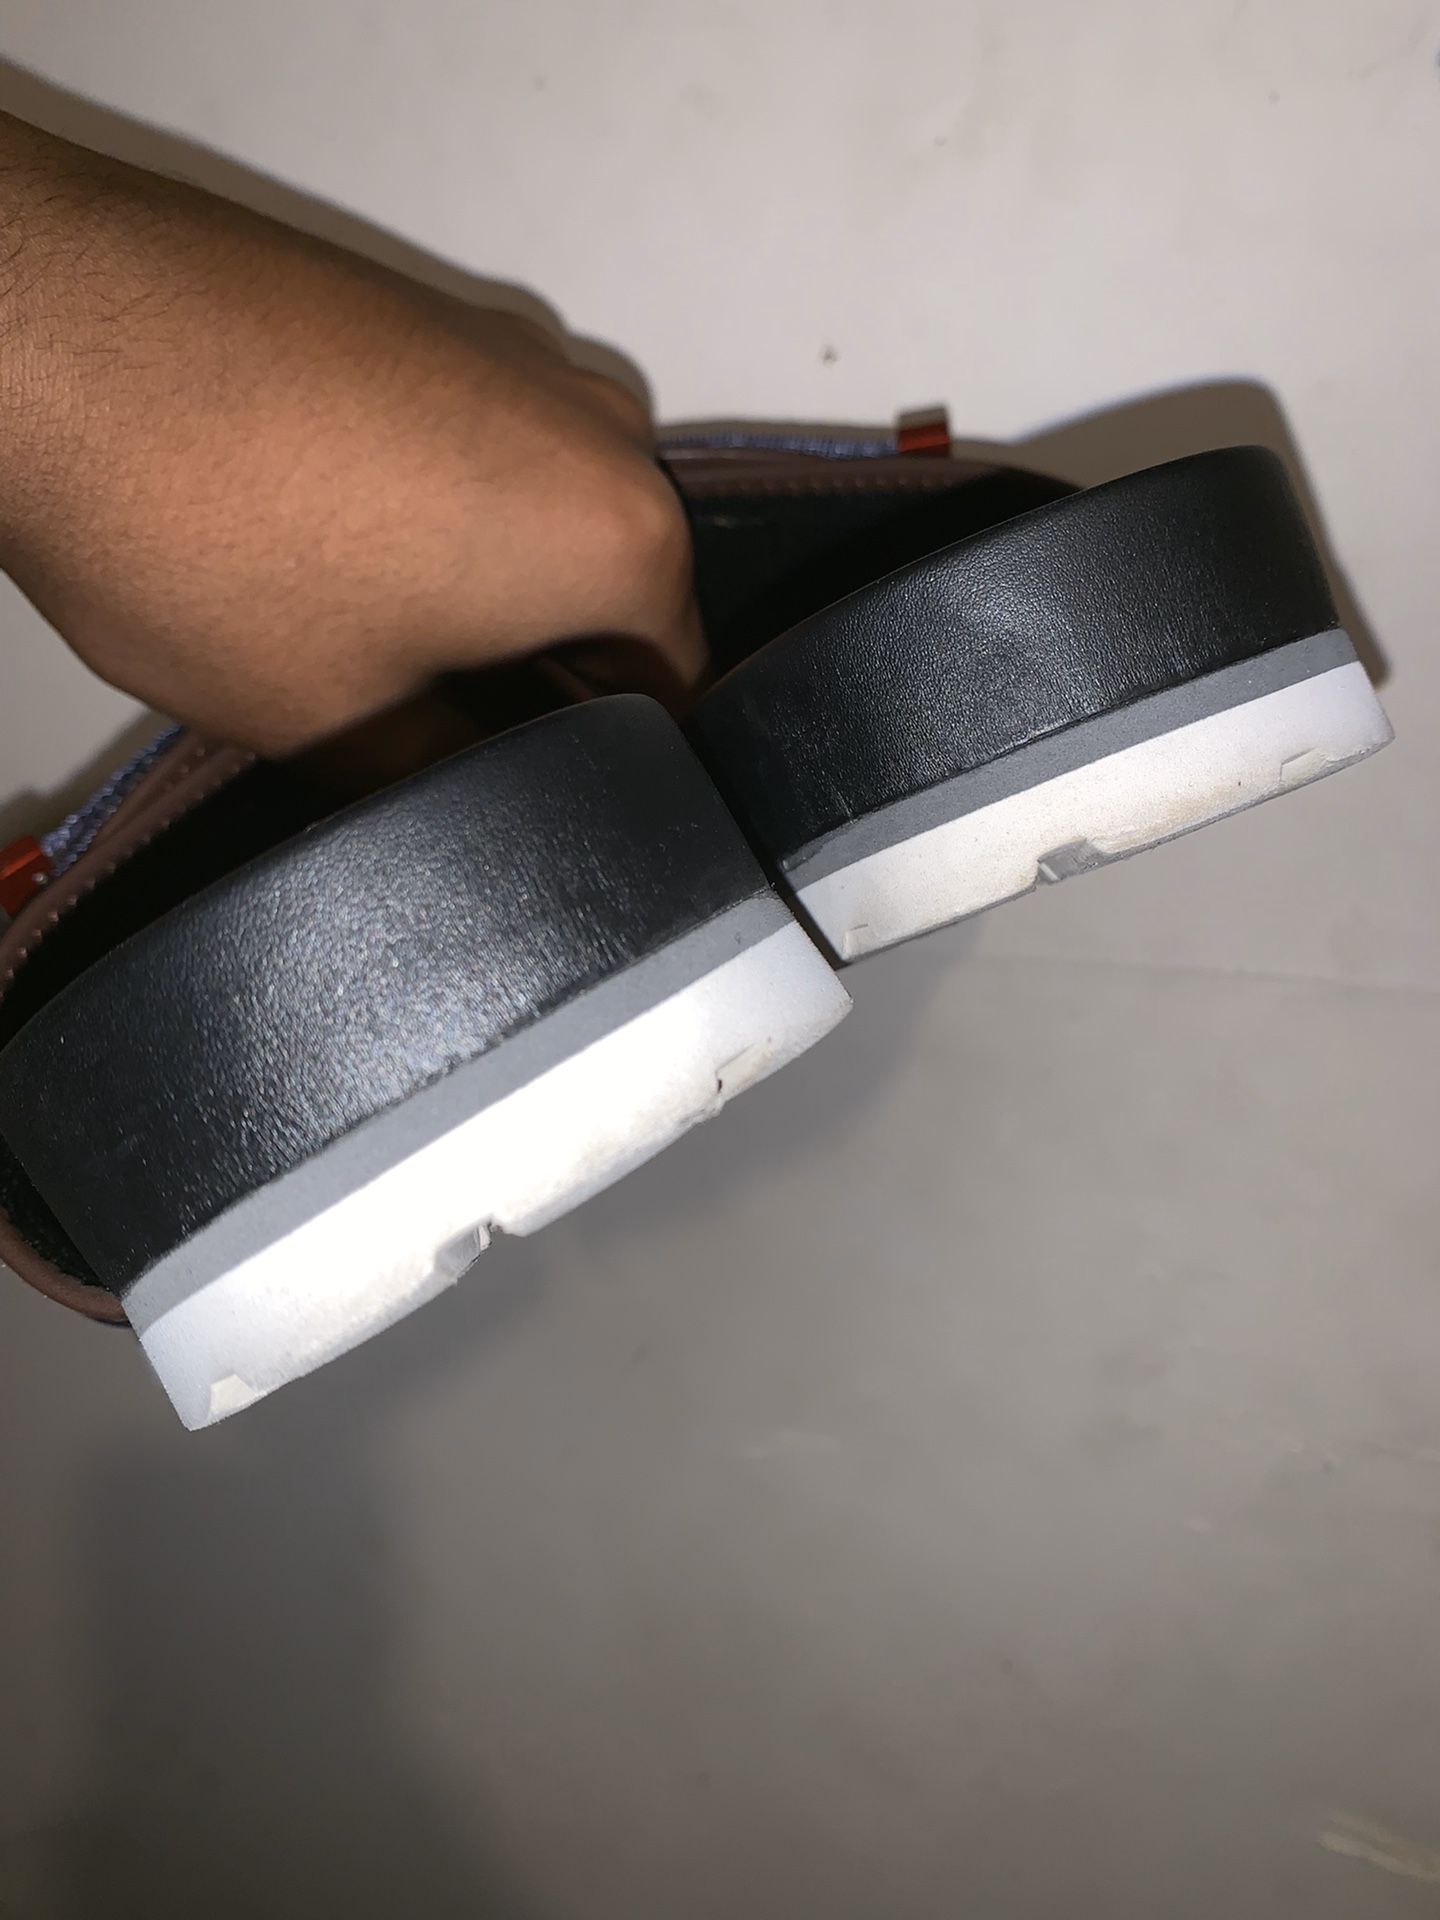 Louis Vuitton Honolulu Mule sandals 260mm(8) - 빈티지제트